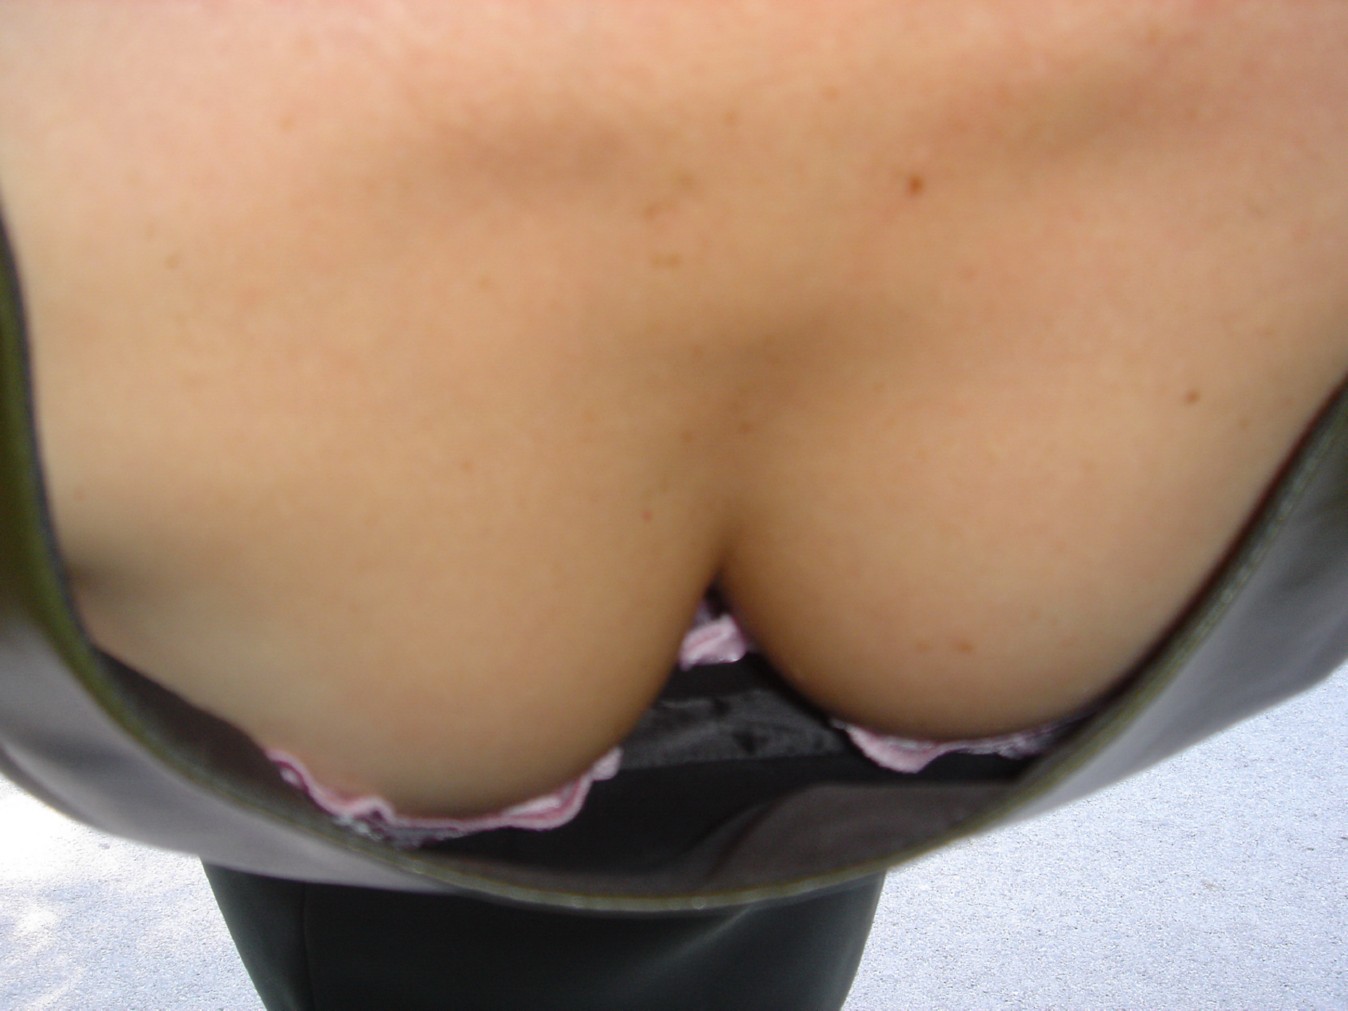 Femme mature aux petits seins pointus partage des photos coquines